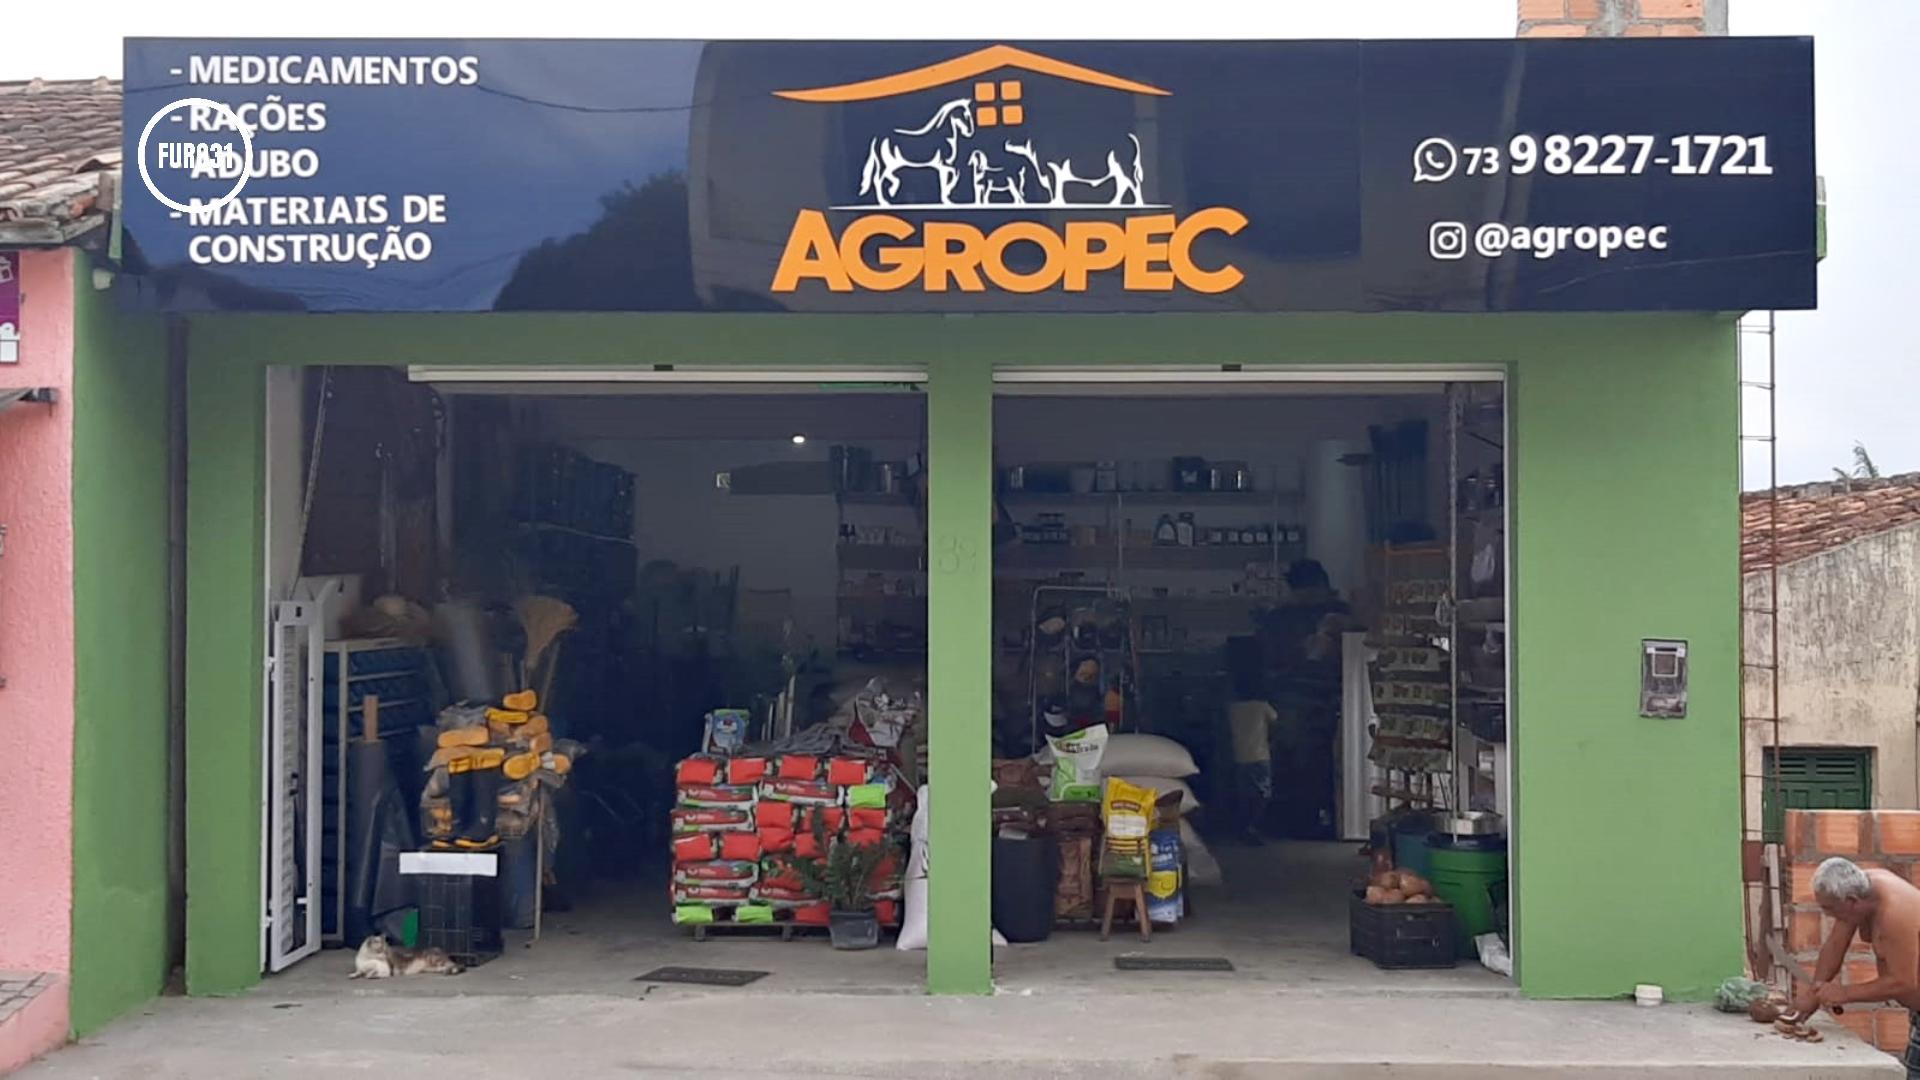 Agropec reinaugura loja com sede própria no centro de Guaratinga